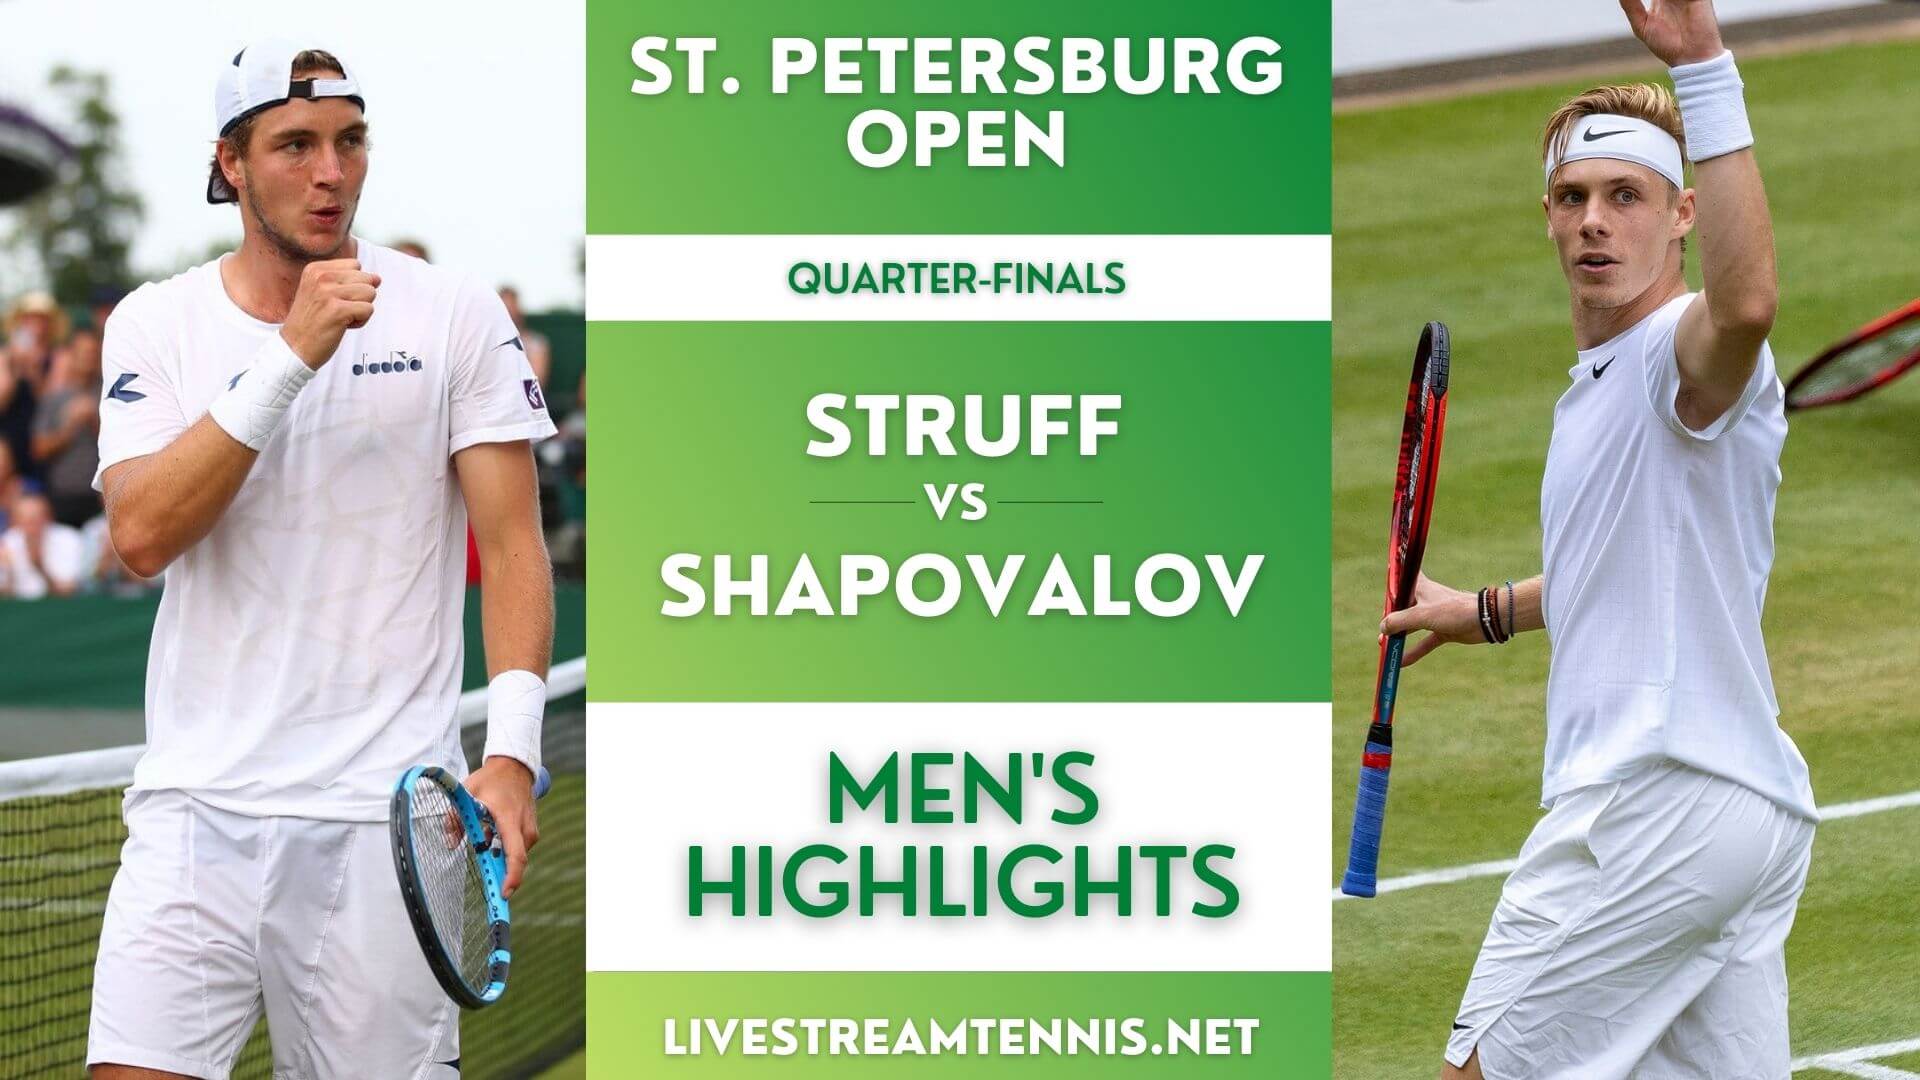 St Petersburg Open ATP Quarter Final 3 Highlights 2021